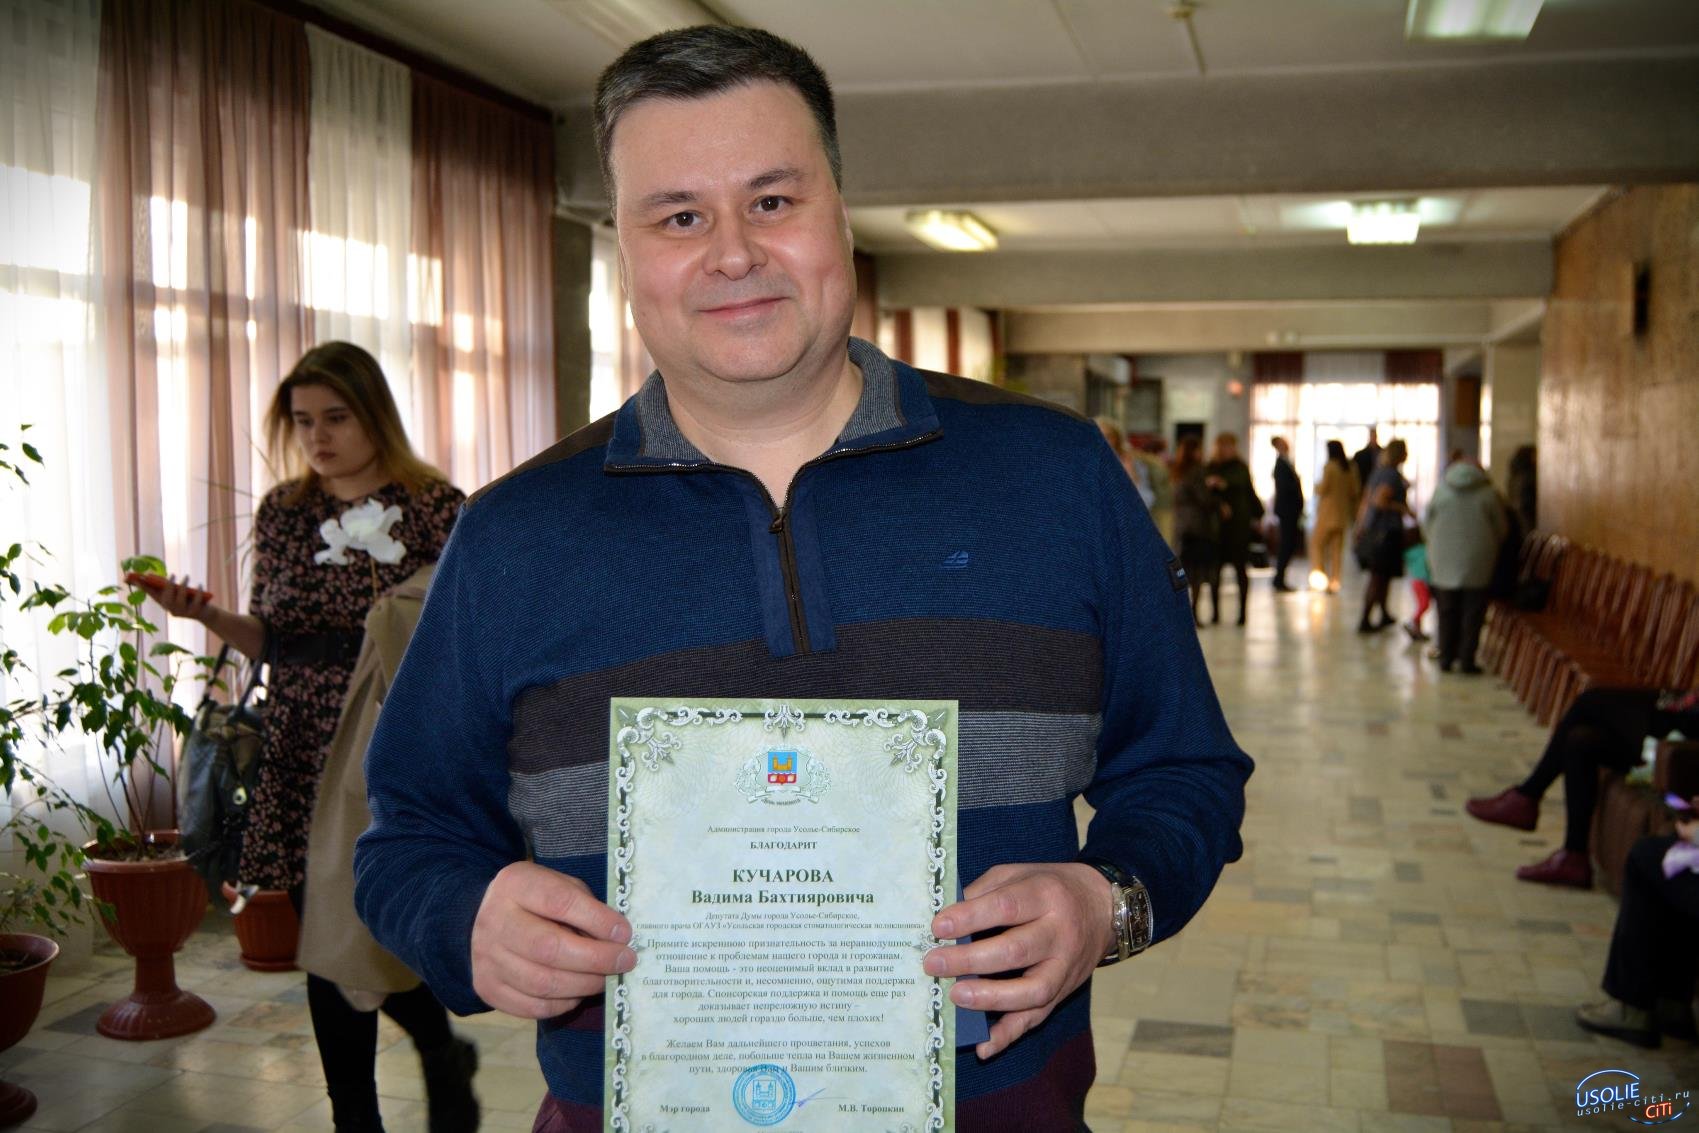 Вадиму Кучарову вручили награду за добрые дела